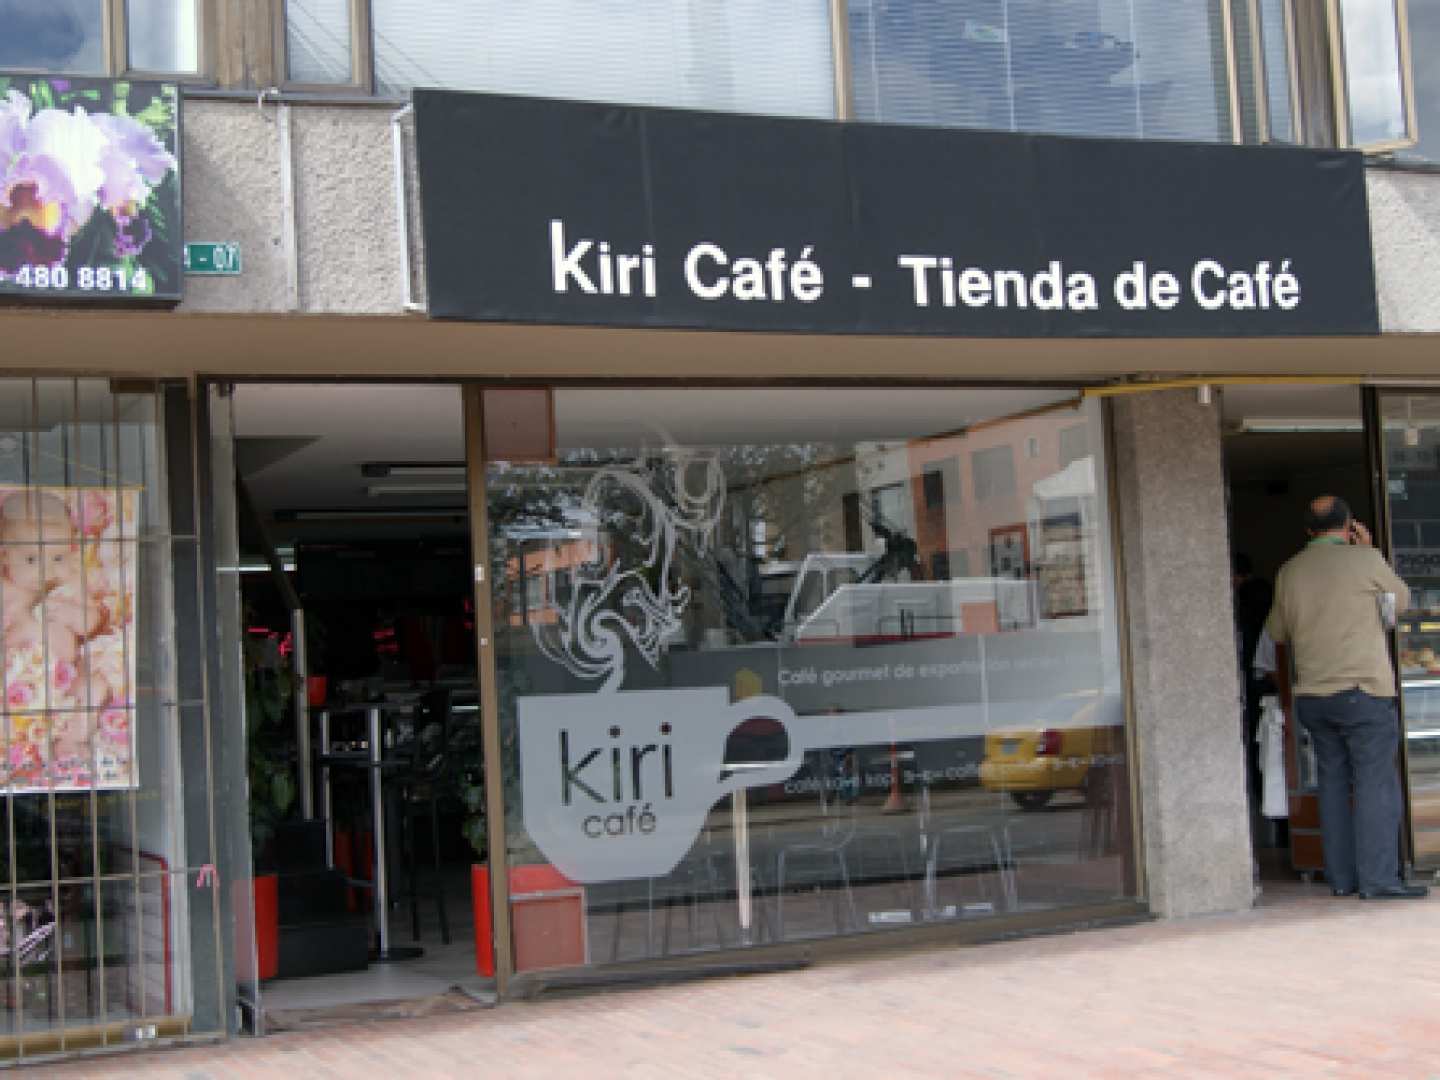 Kiri Café